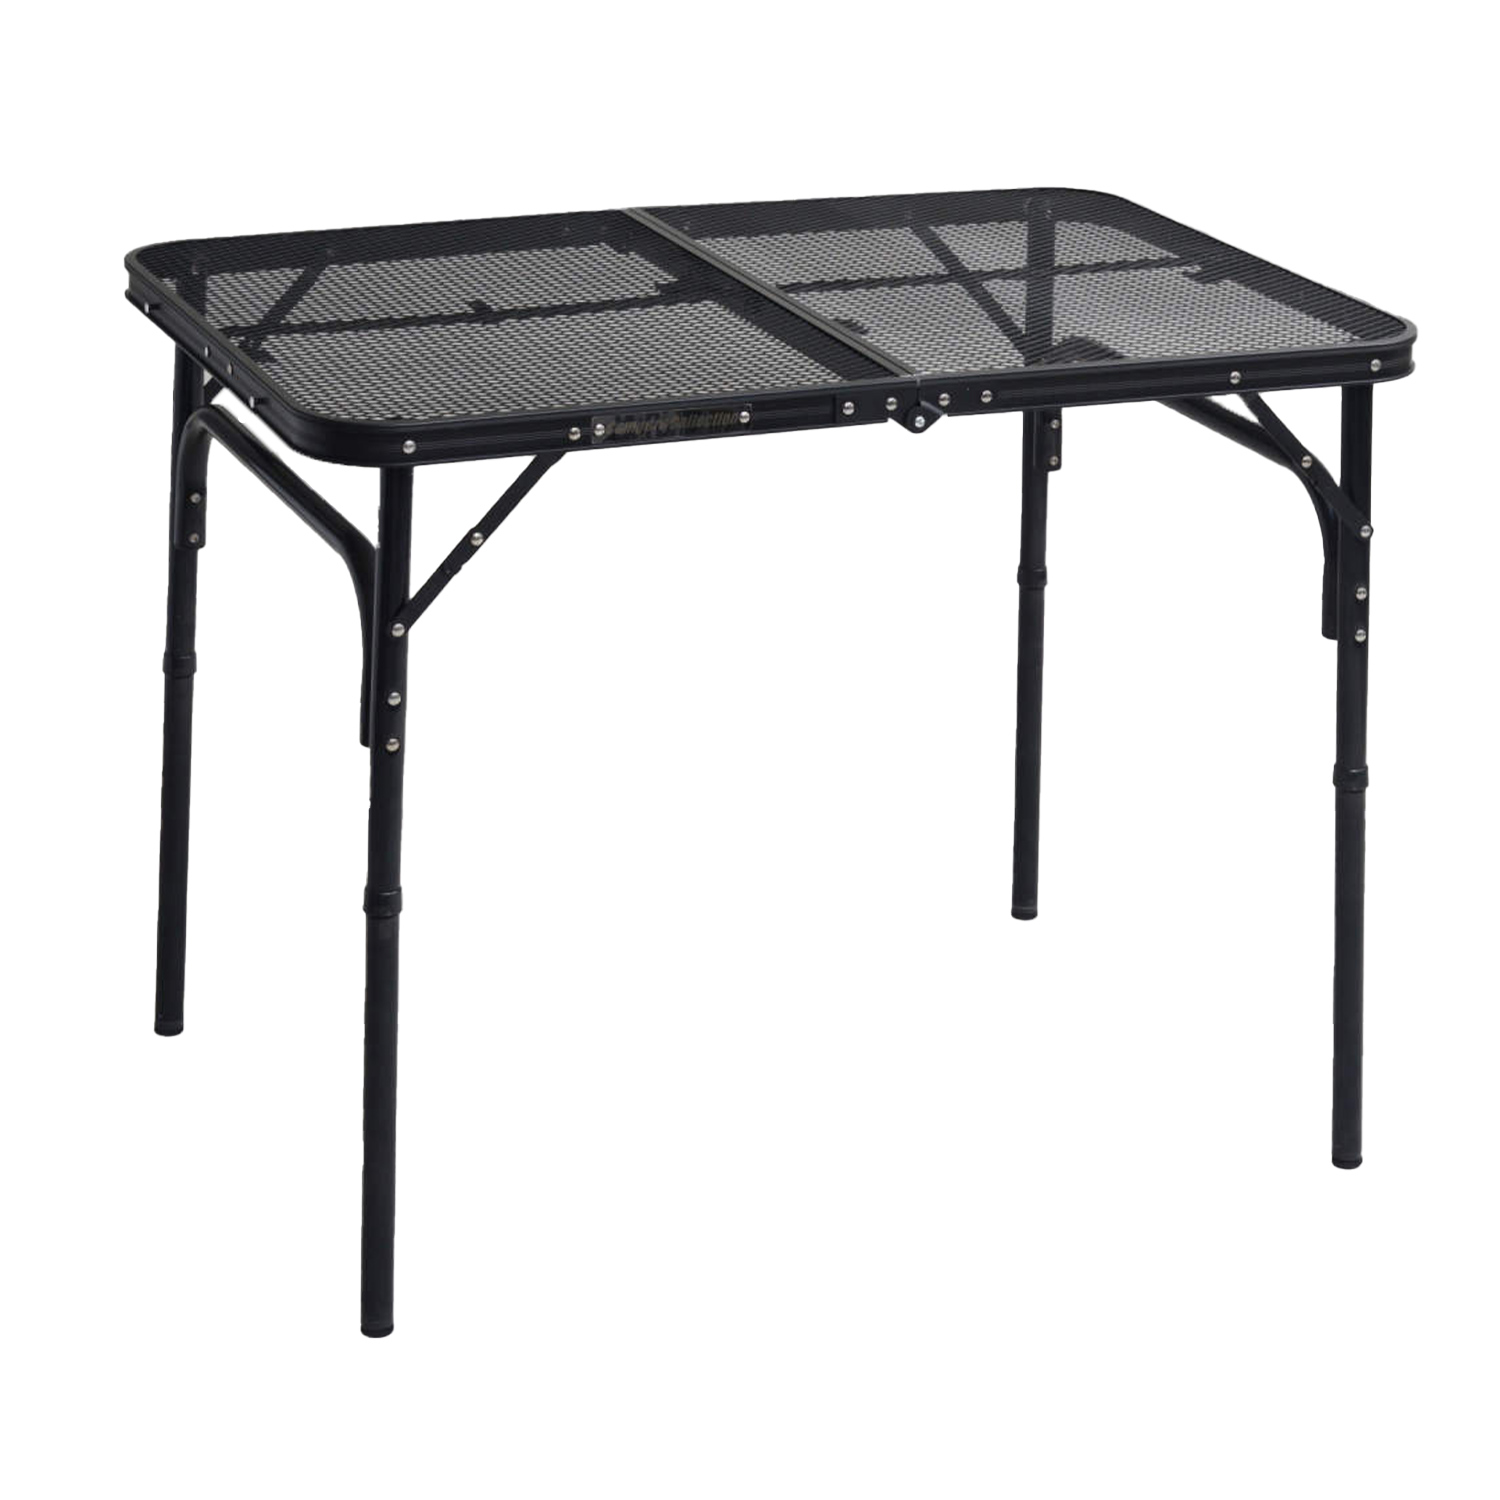 メッシュテーブル タフライト キャンプ テーブル アウトドア テーブル 90×60cm TLT-6090 アウトドアテーブル 折りたたみテーブル